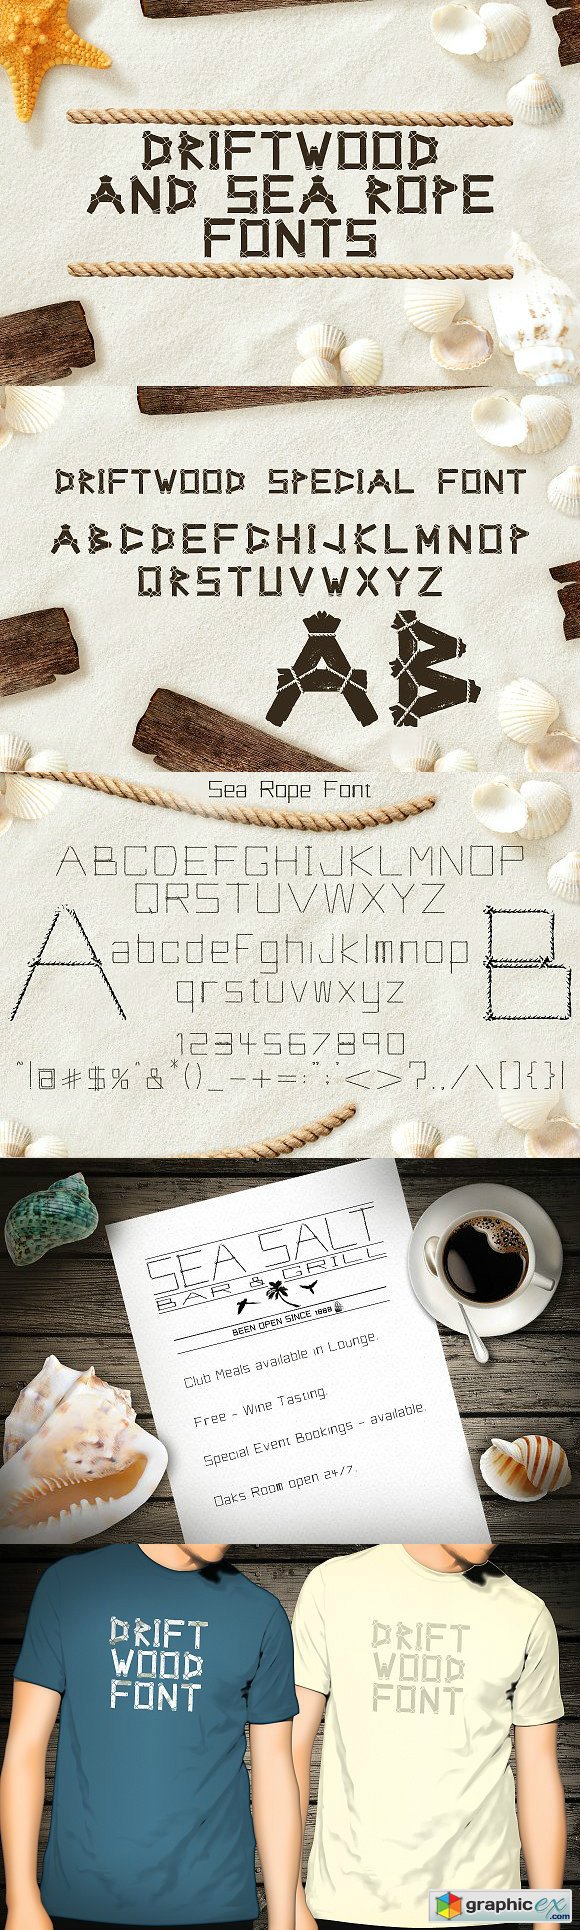 Driftwood & Sea Rope fonts